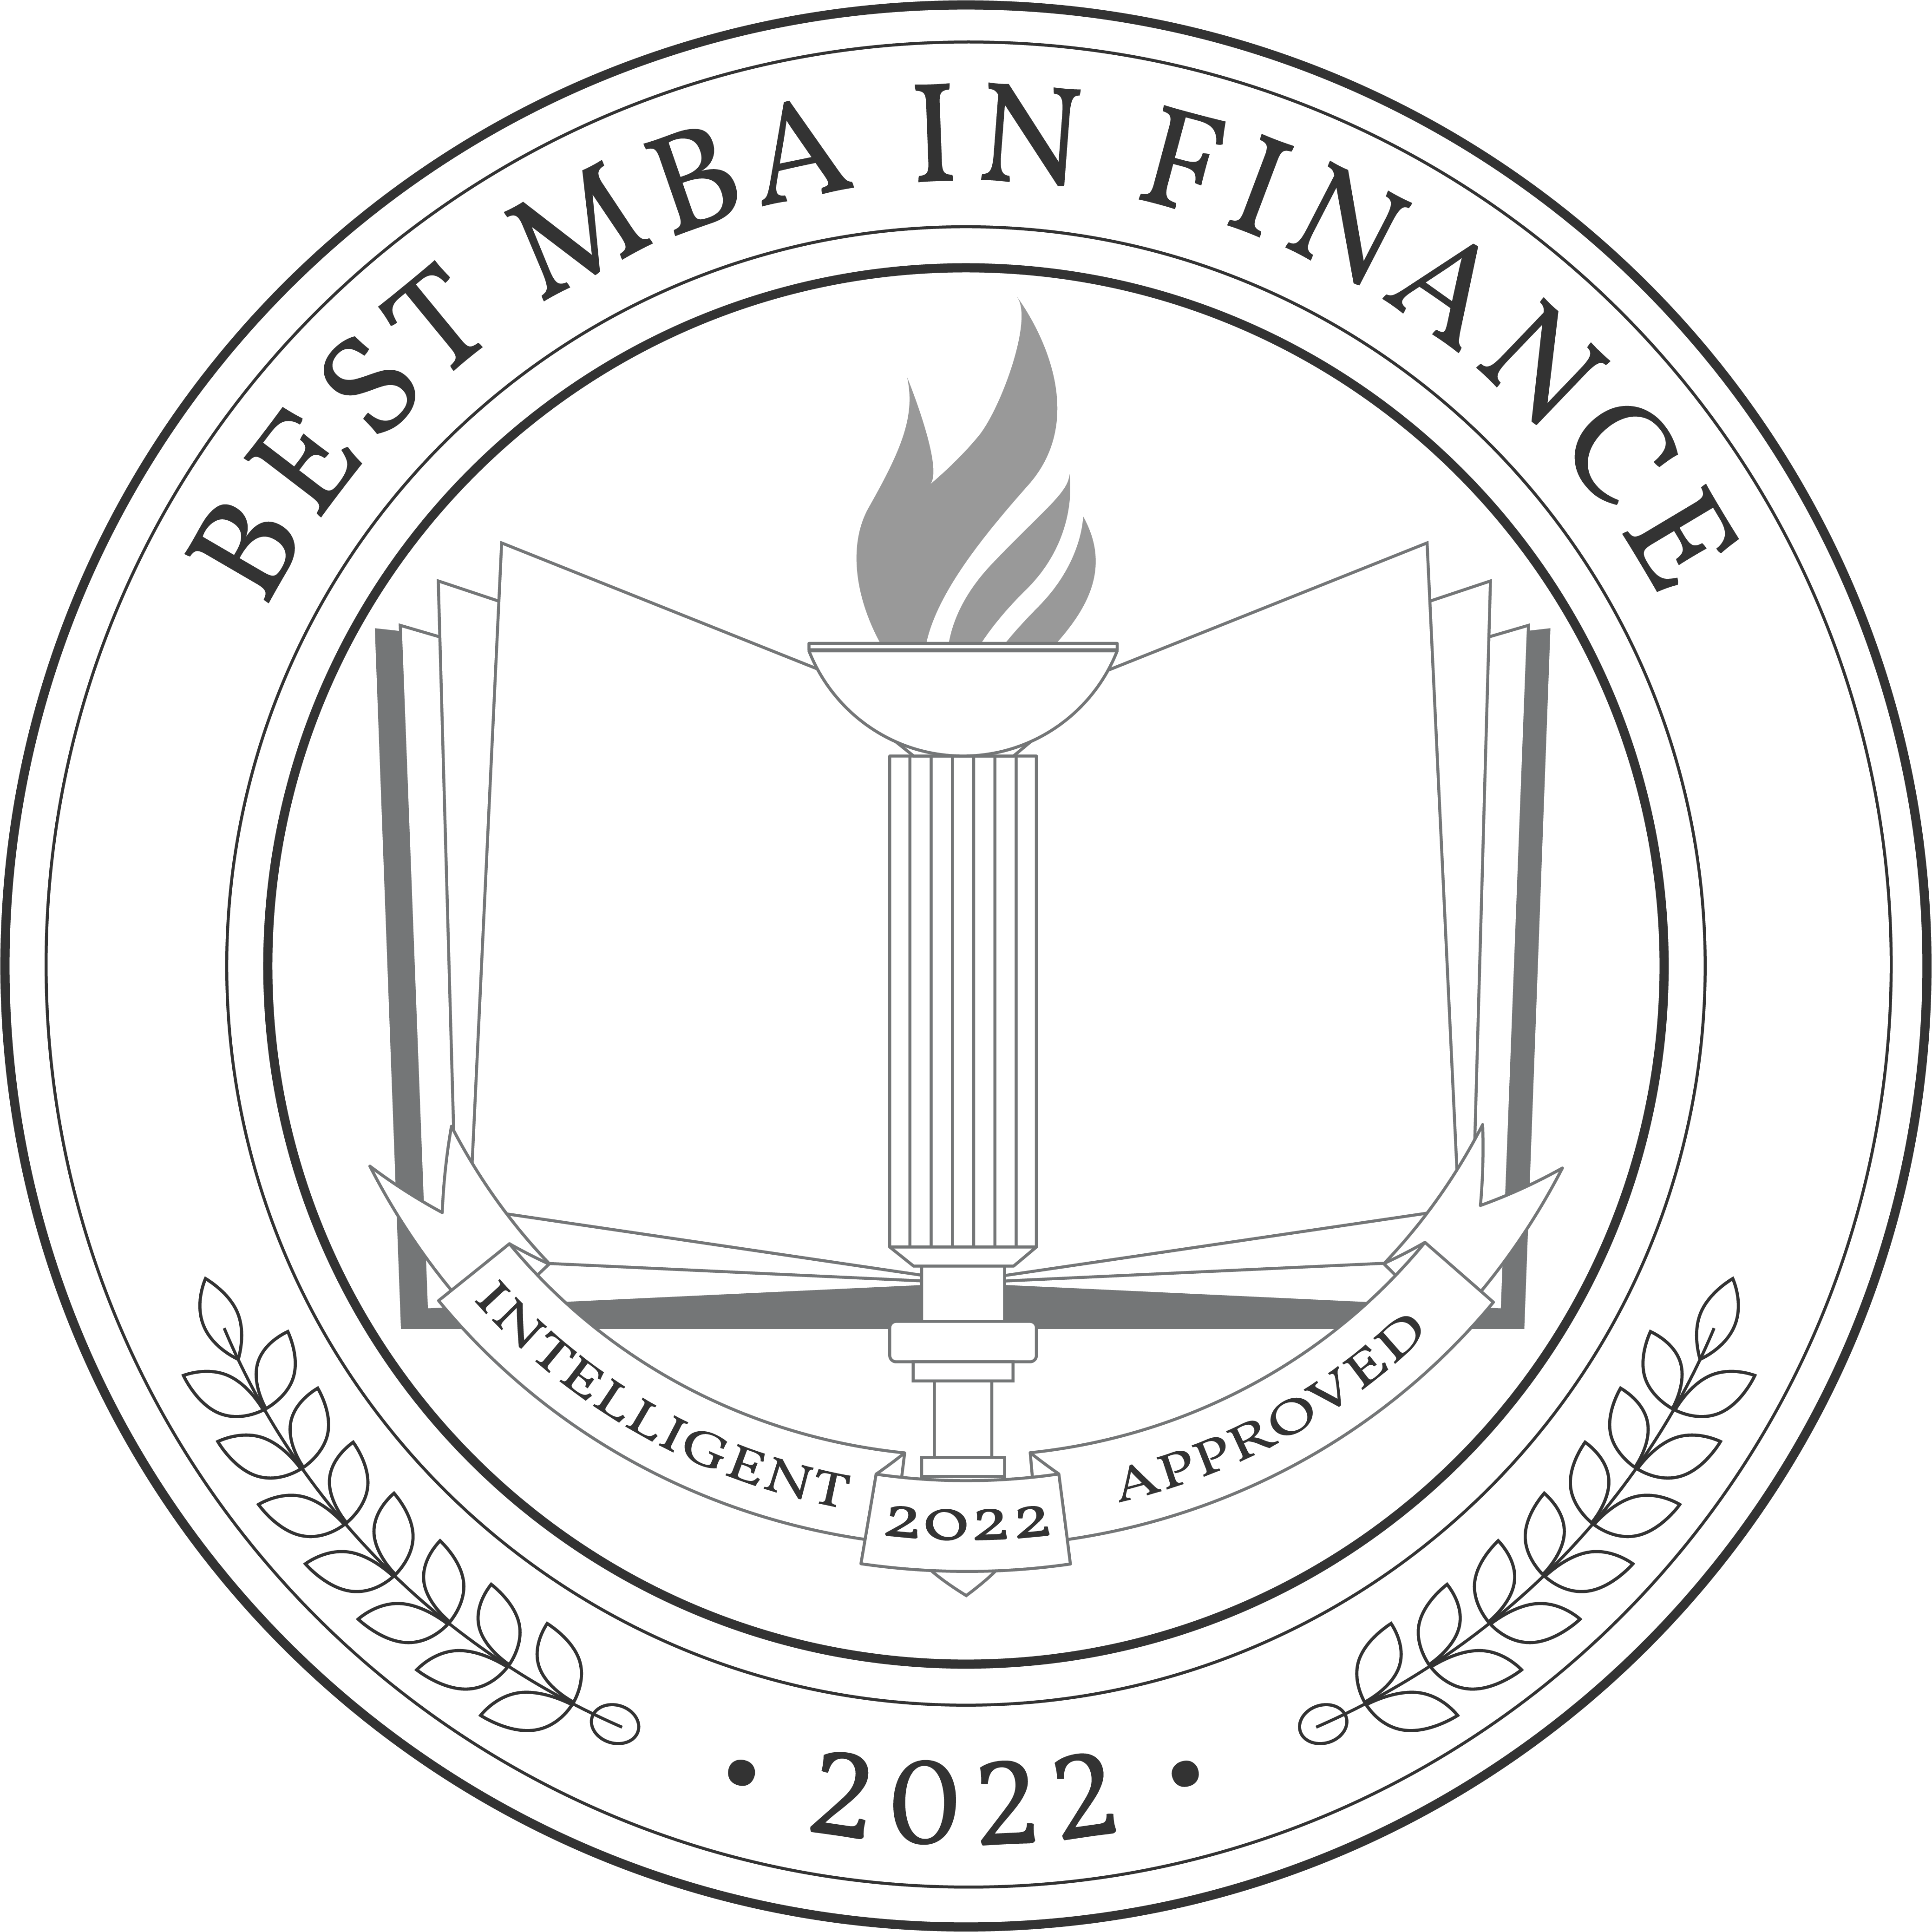 Best MBA in Finance Degree Programs